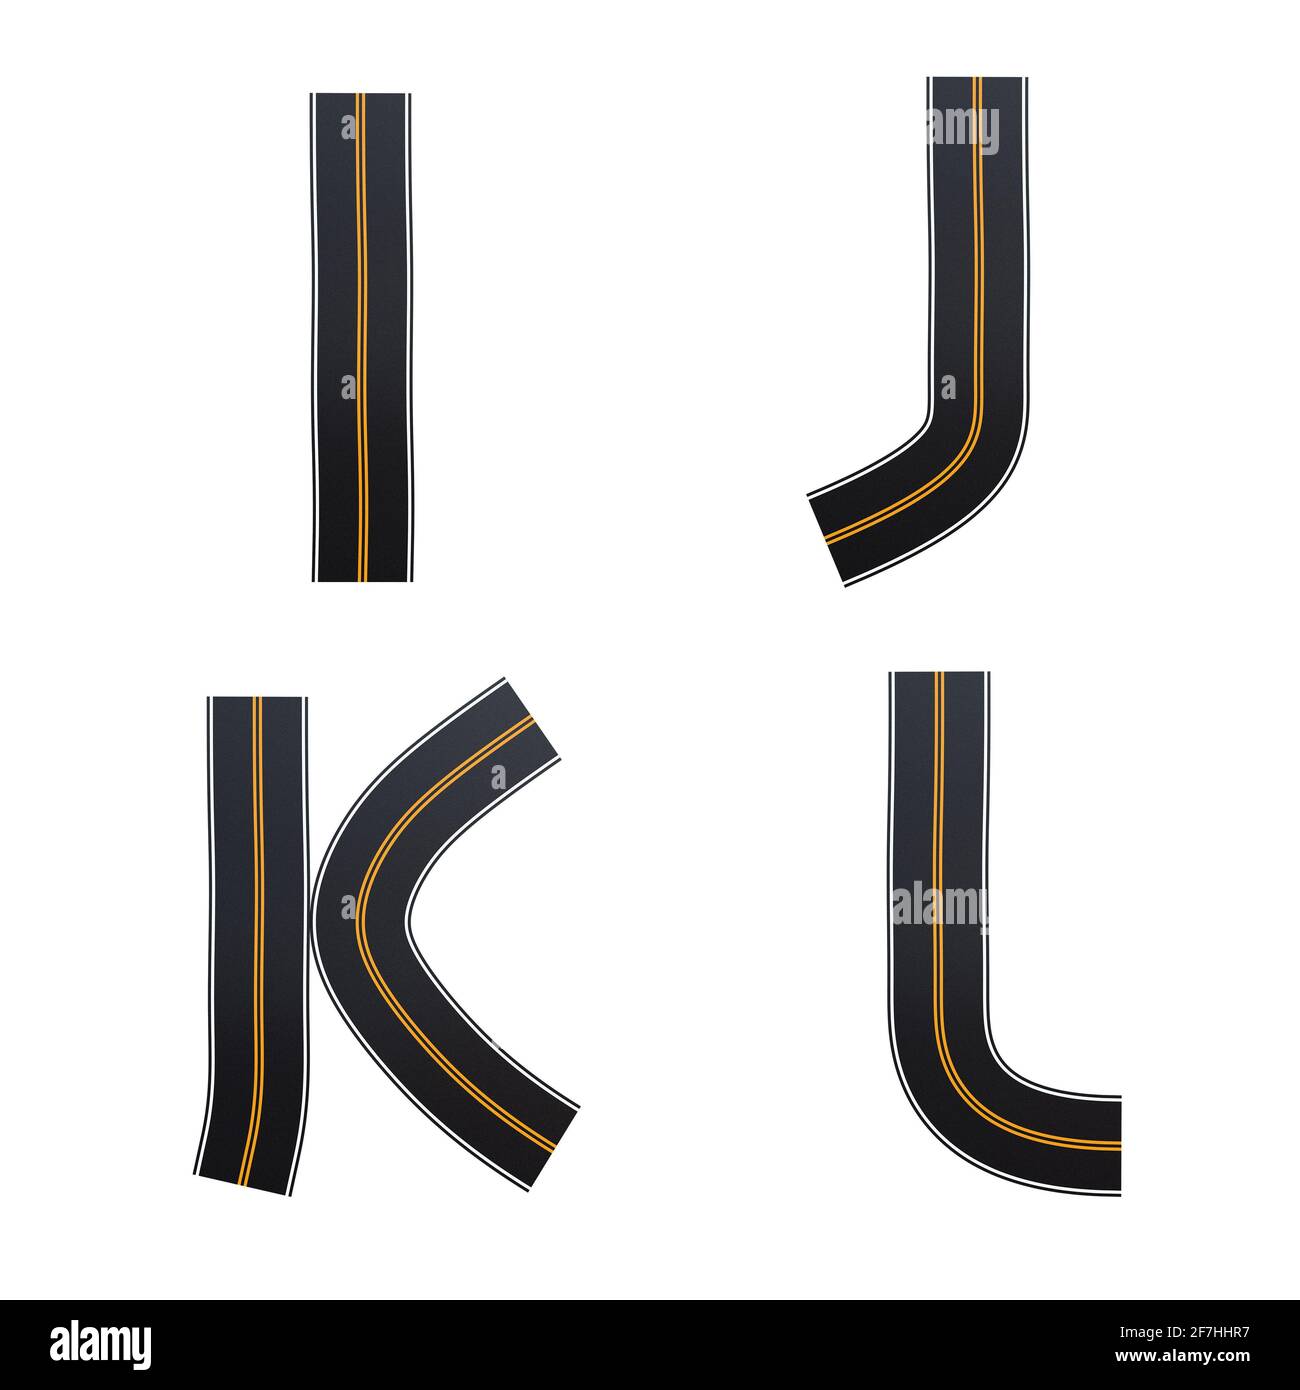 Rappresentazione 3D dell'alfabeto delle strade asfaltate - lettere i-L. Foto Stock